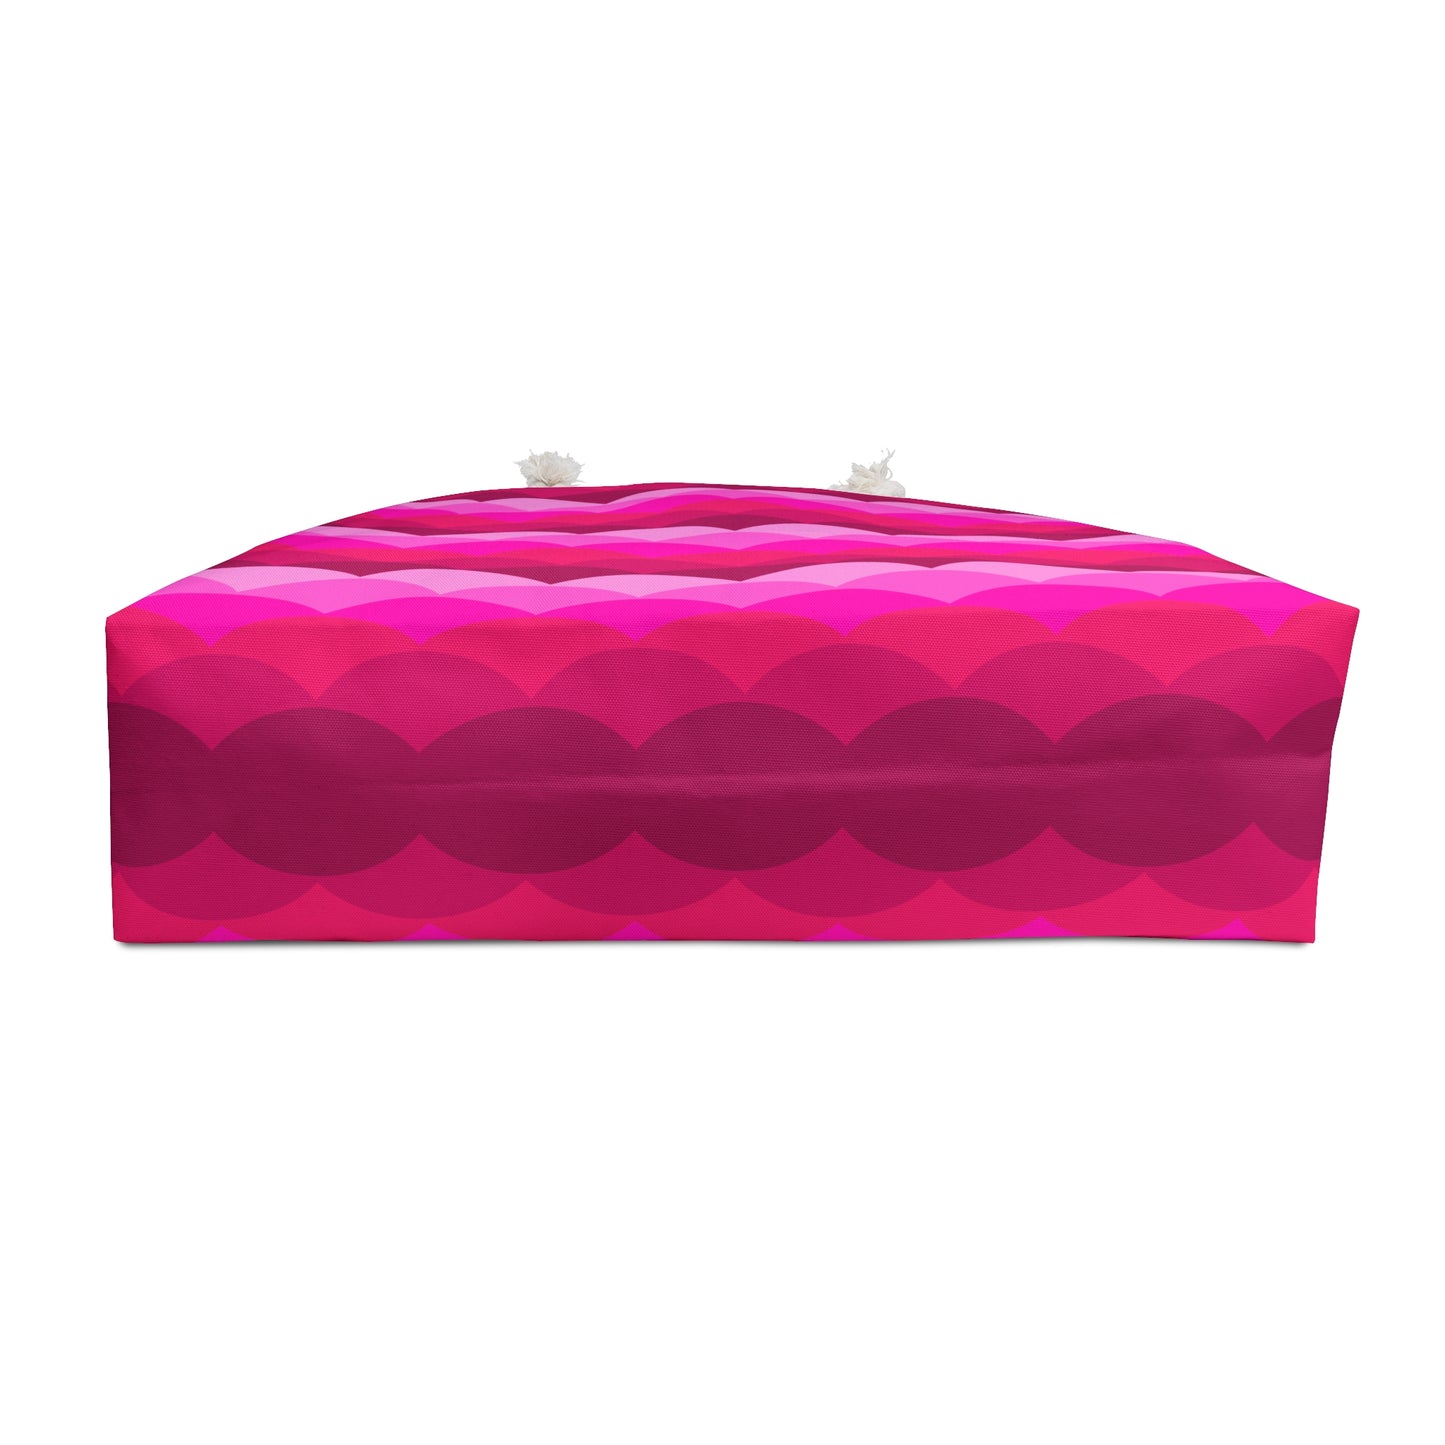 Variations on a Pink Rose - Sunrise - Weekender Bag